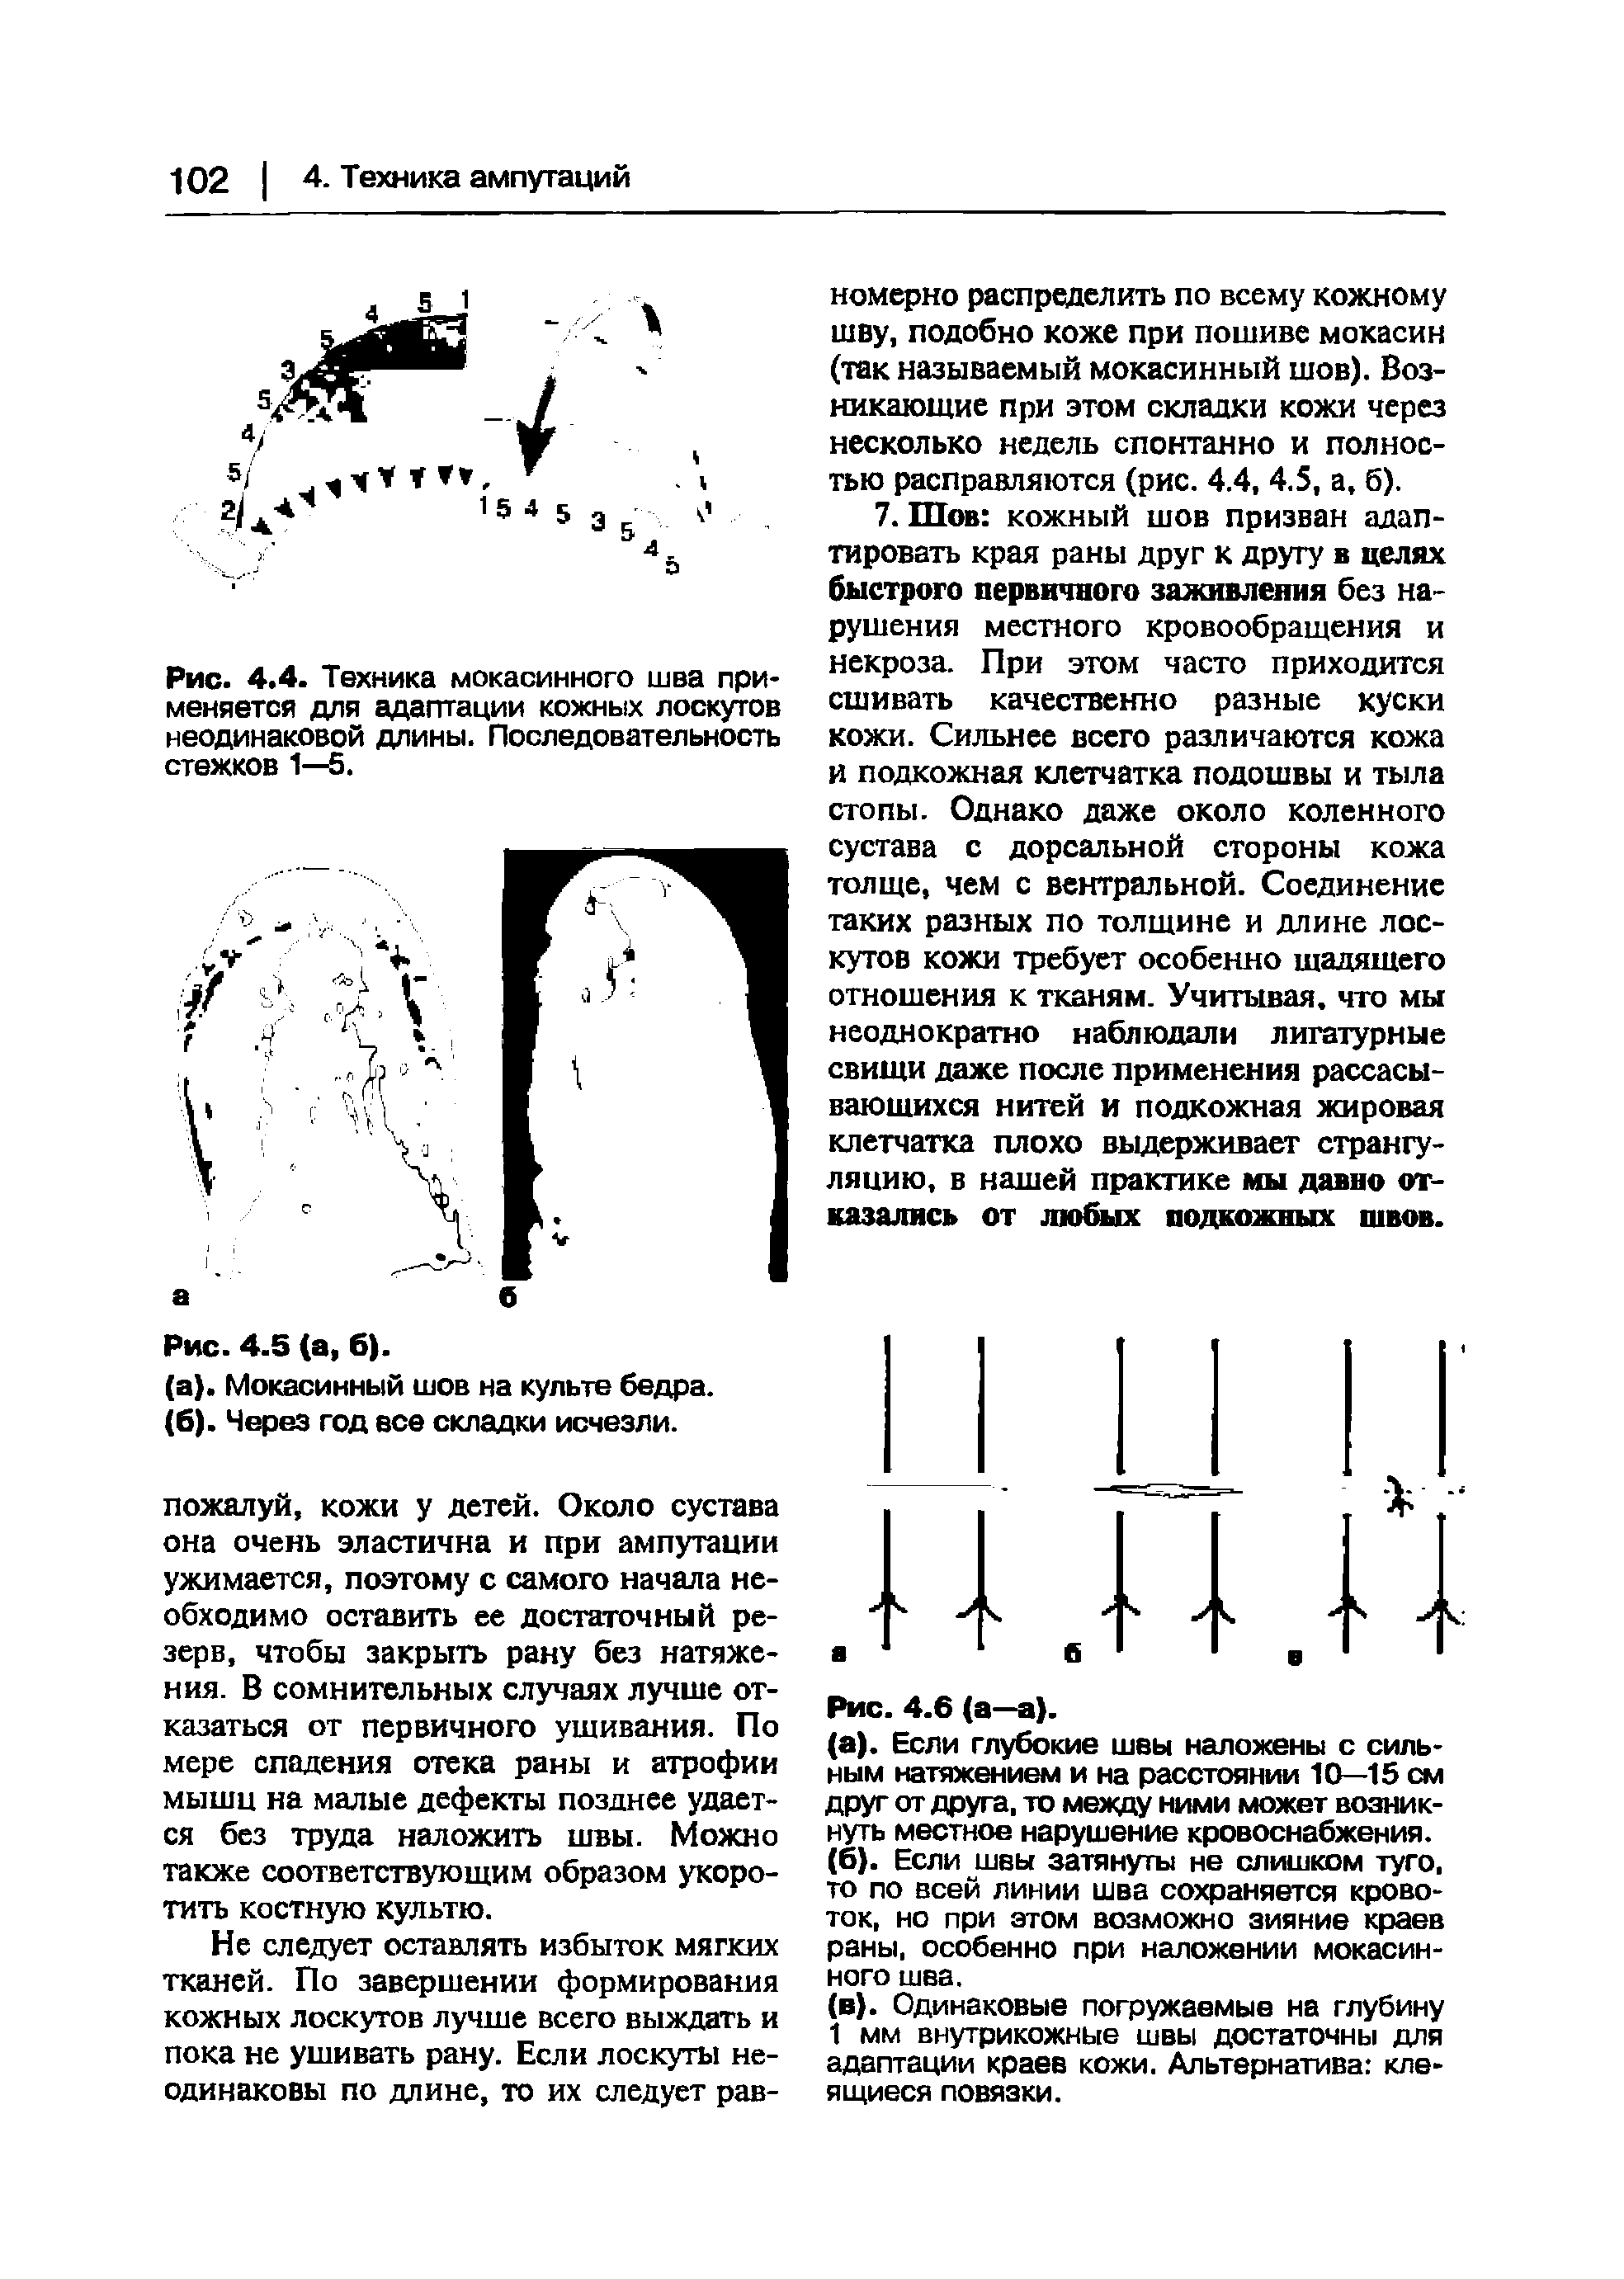 Рис. 4.4. Техника мокасинного шва применяется для адаптации кожных лоскутов неодинаковой длины. Последовательность стежков 1—5.